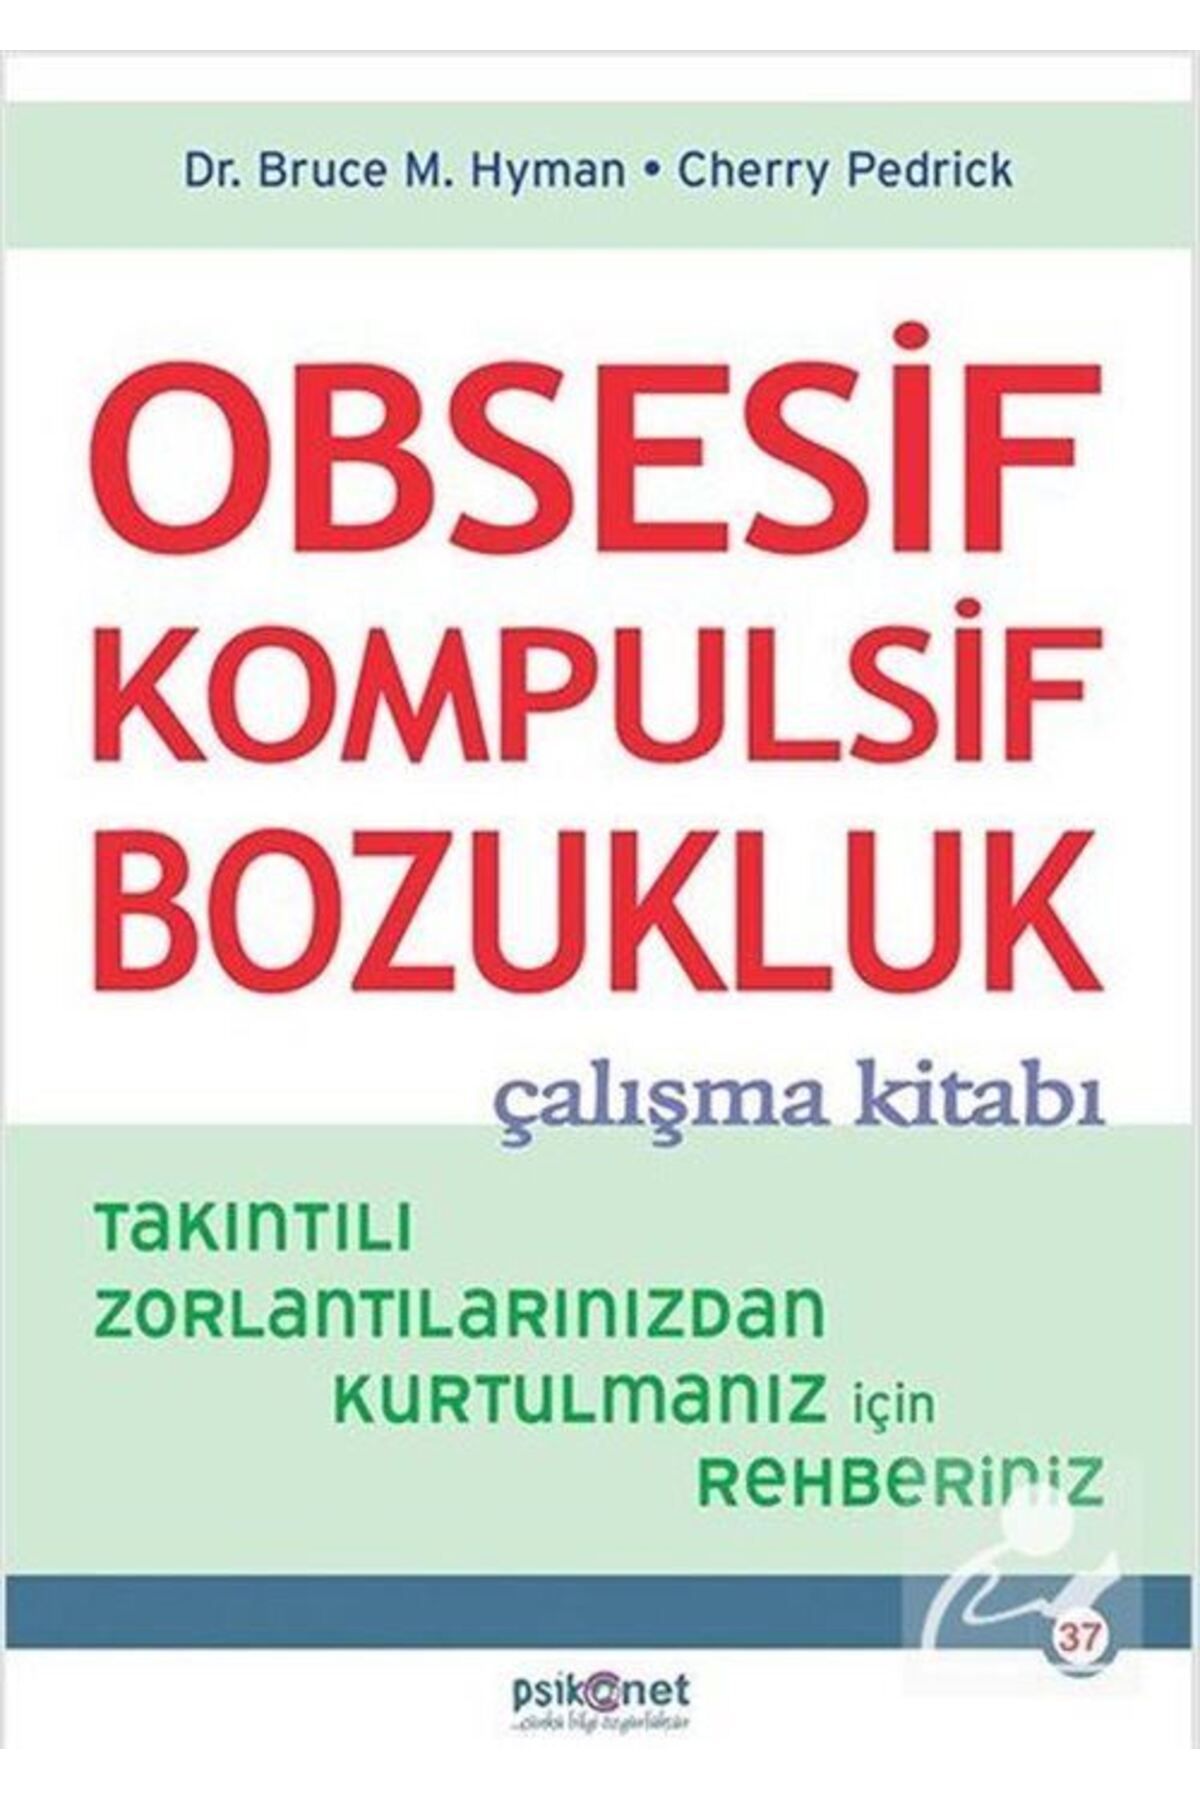 Psikonet Yayınları Obsesif Kompulsif Bozukluk Çalışma Kitabı